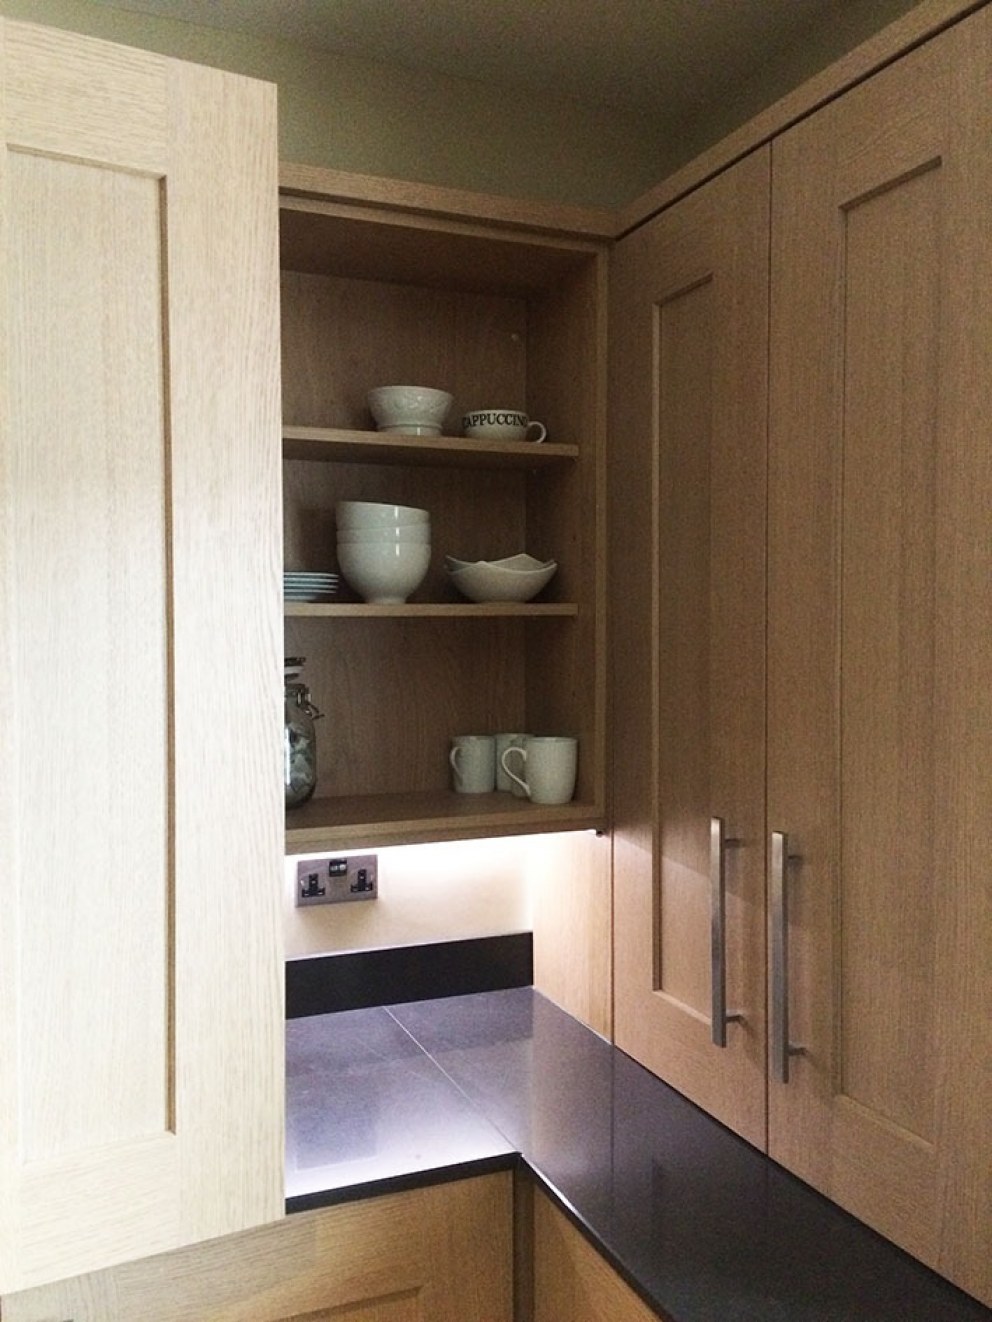 Kitchen facelift in Leeds | Kitchen 004 | Interior Designers